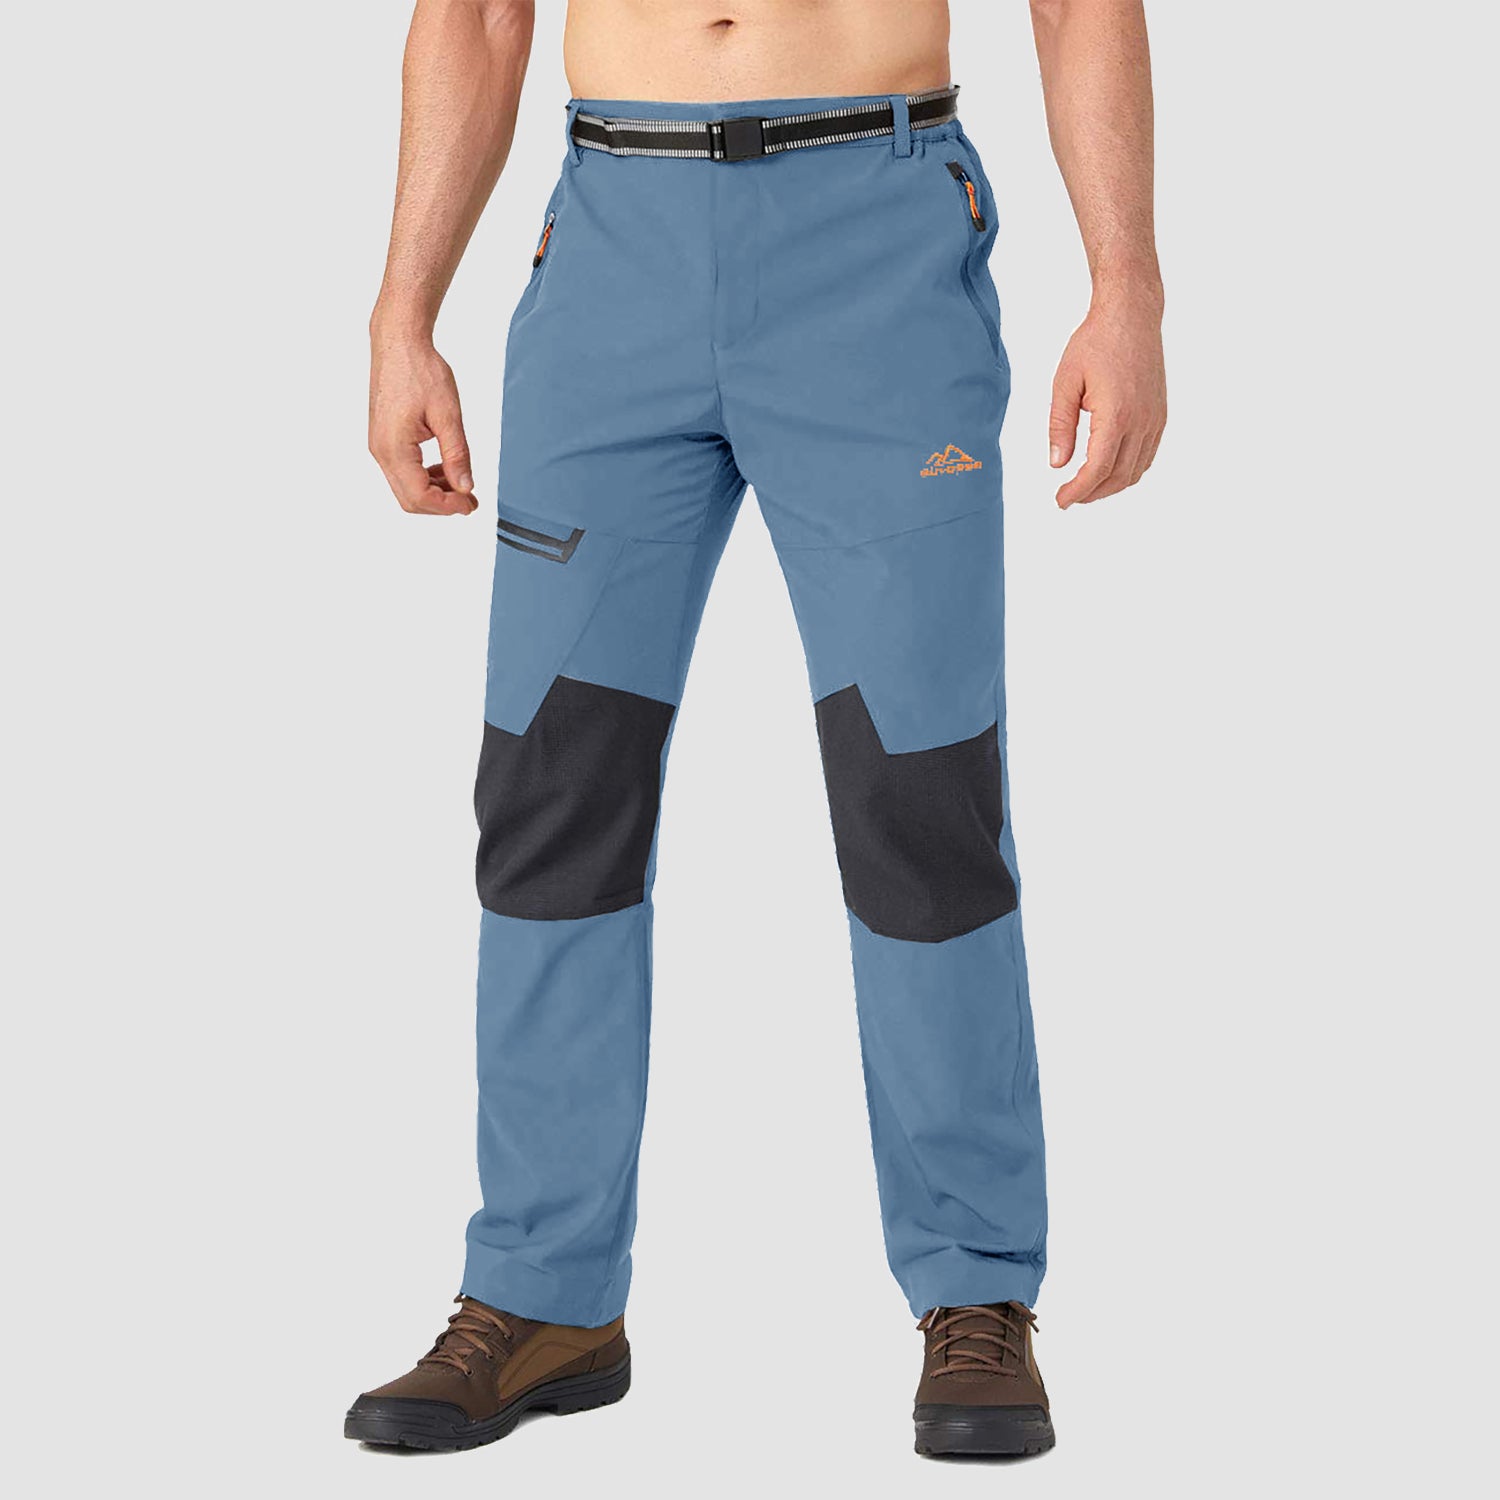 Men's Winter Pants Fleece Lined Ski Snow Pants Water Resistant with 4 –  MAGCOMSEN